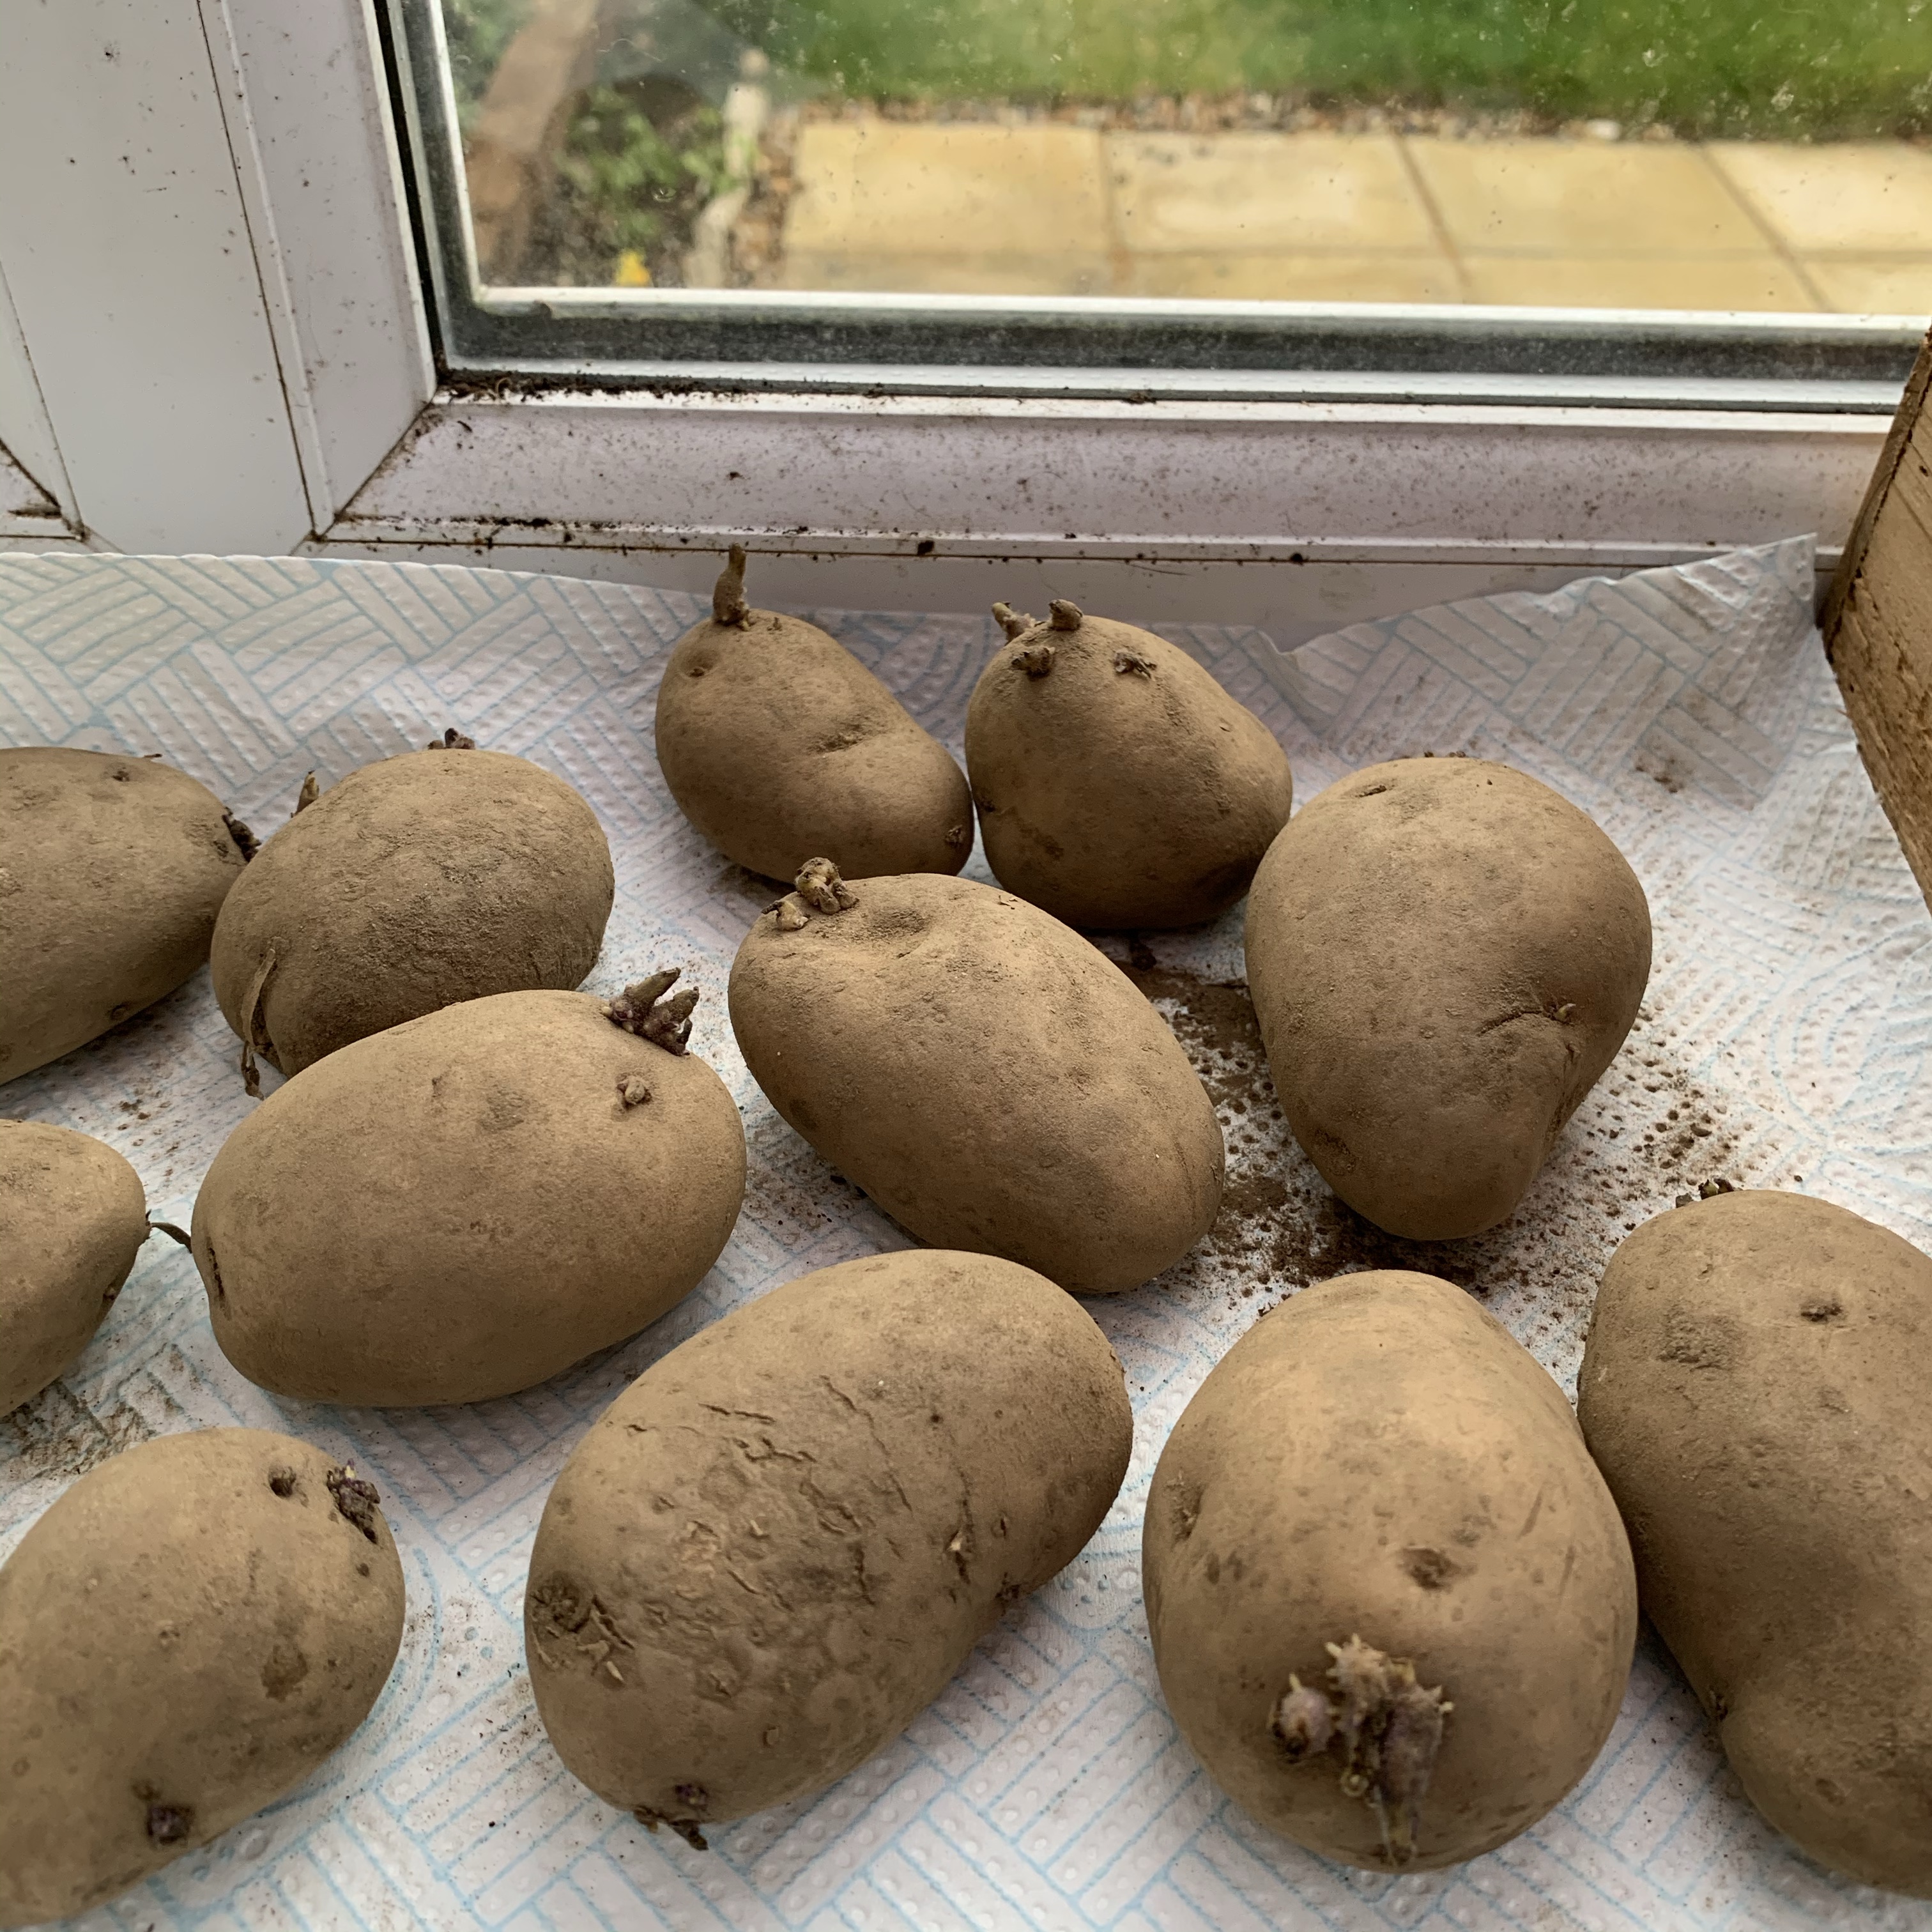 Chitting potatoes